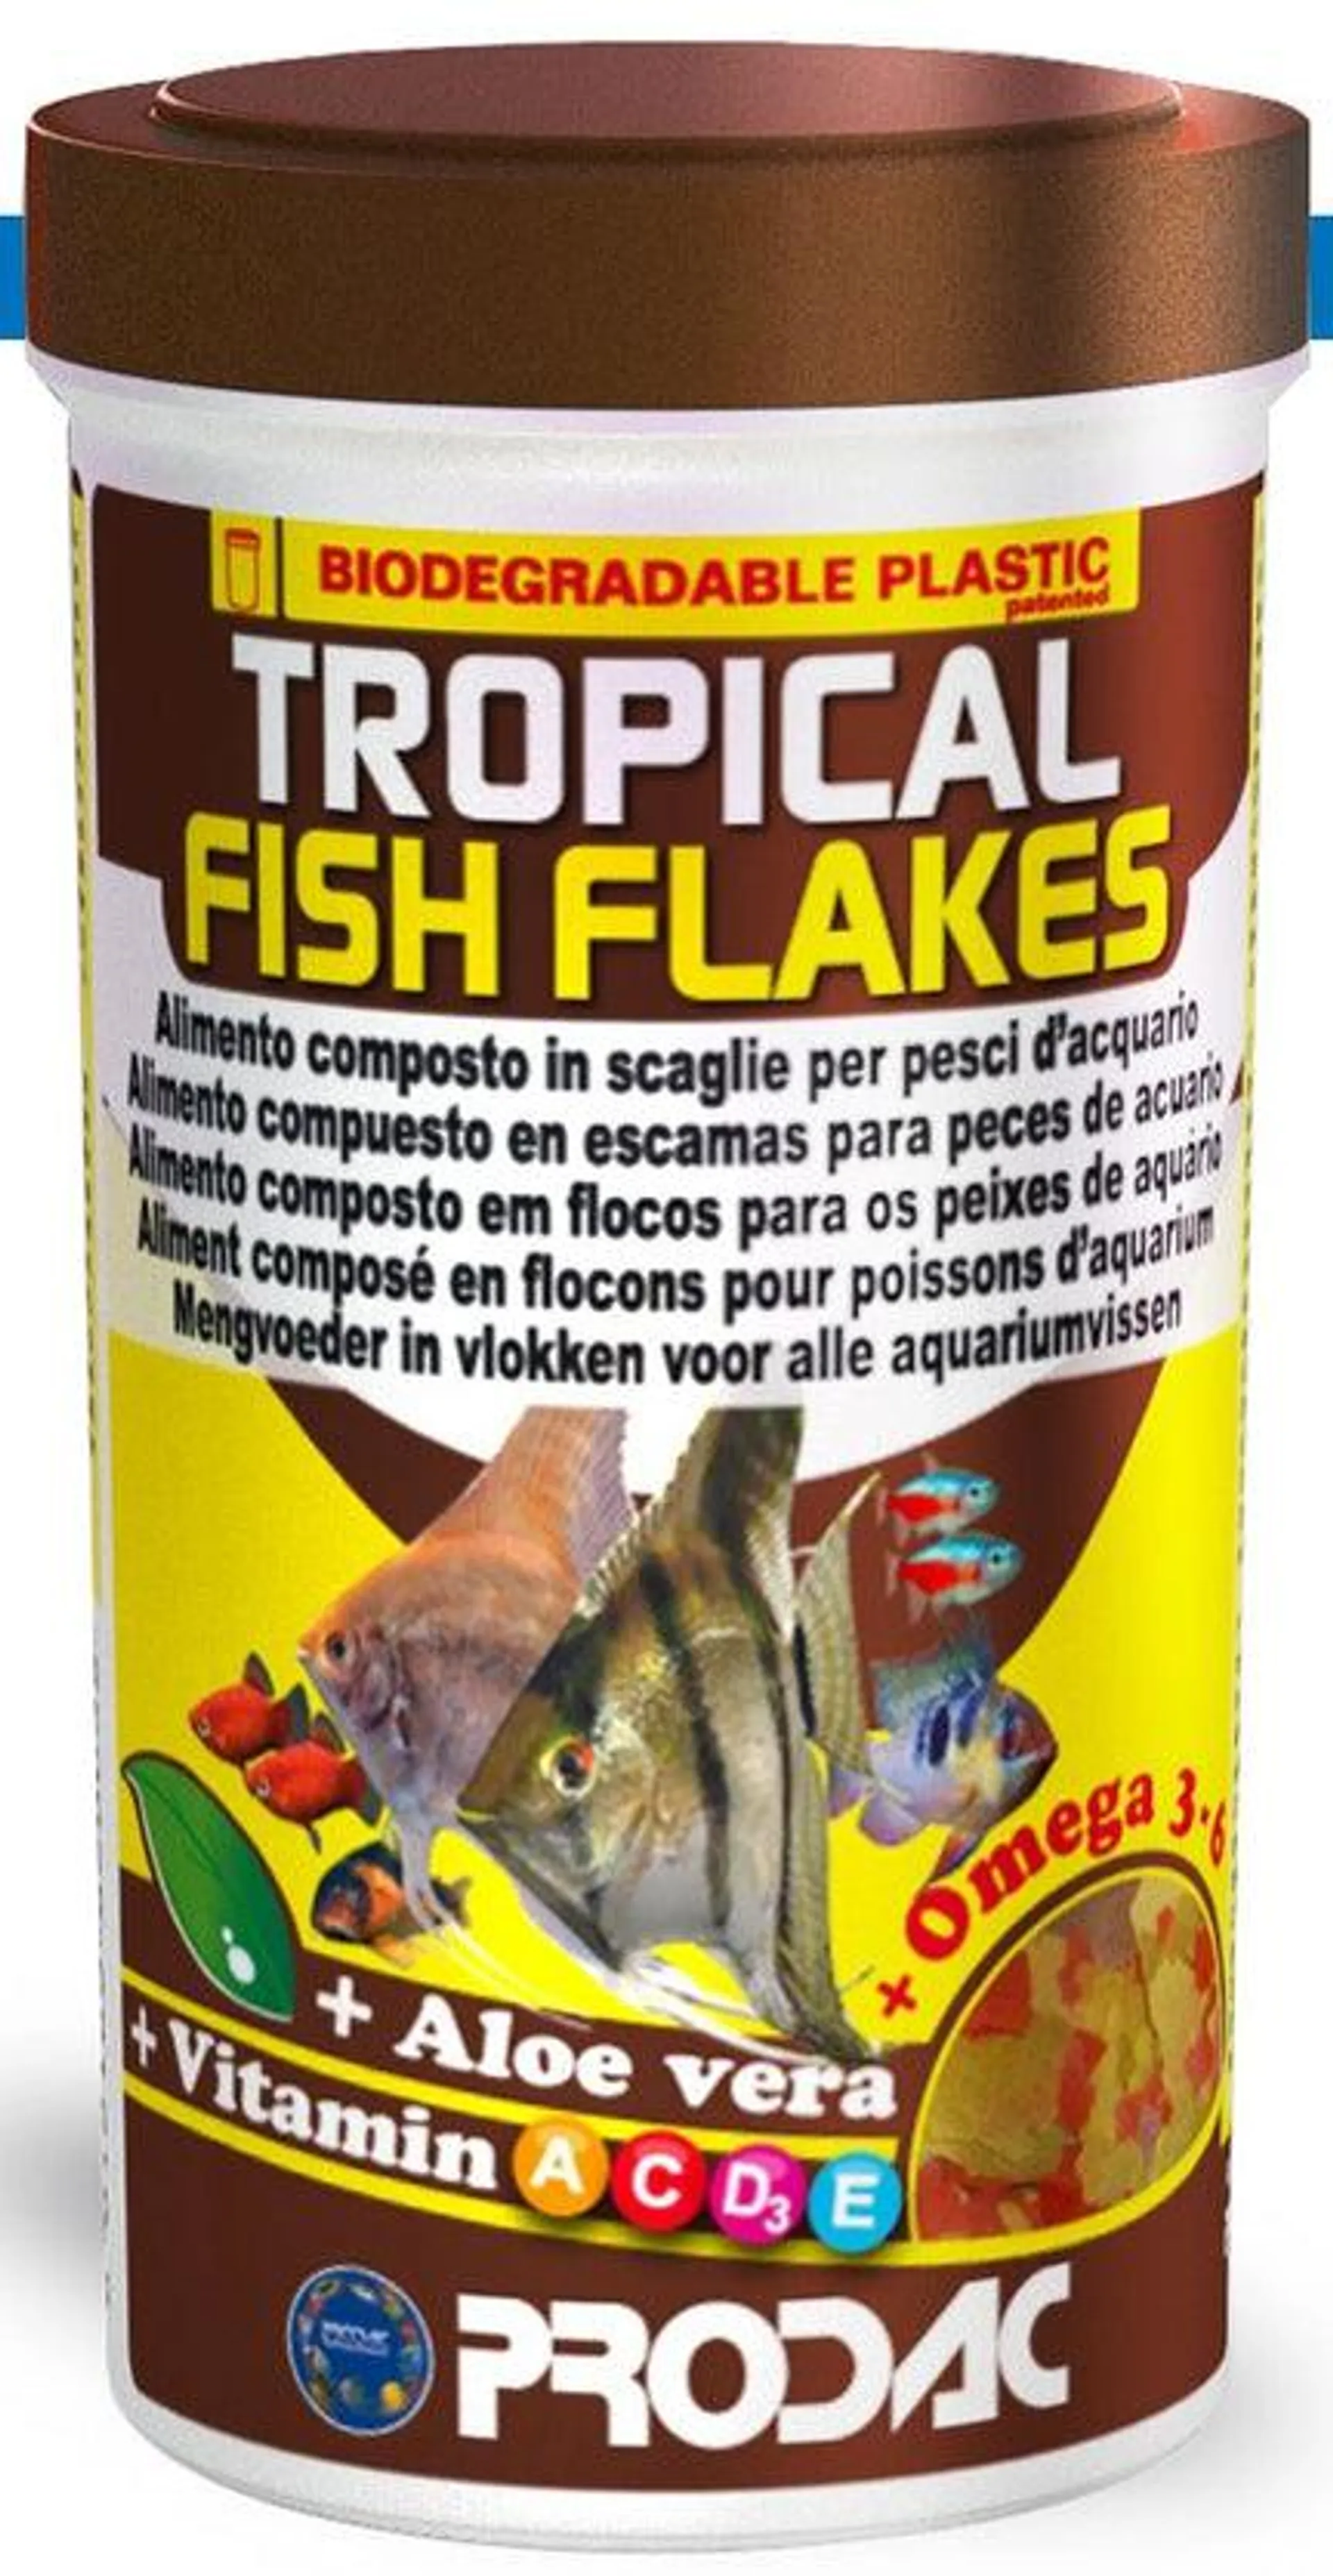 PRODAC Tropical fish flakes, hrana u listićima za sve tropske ribice